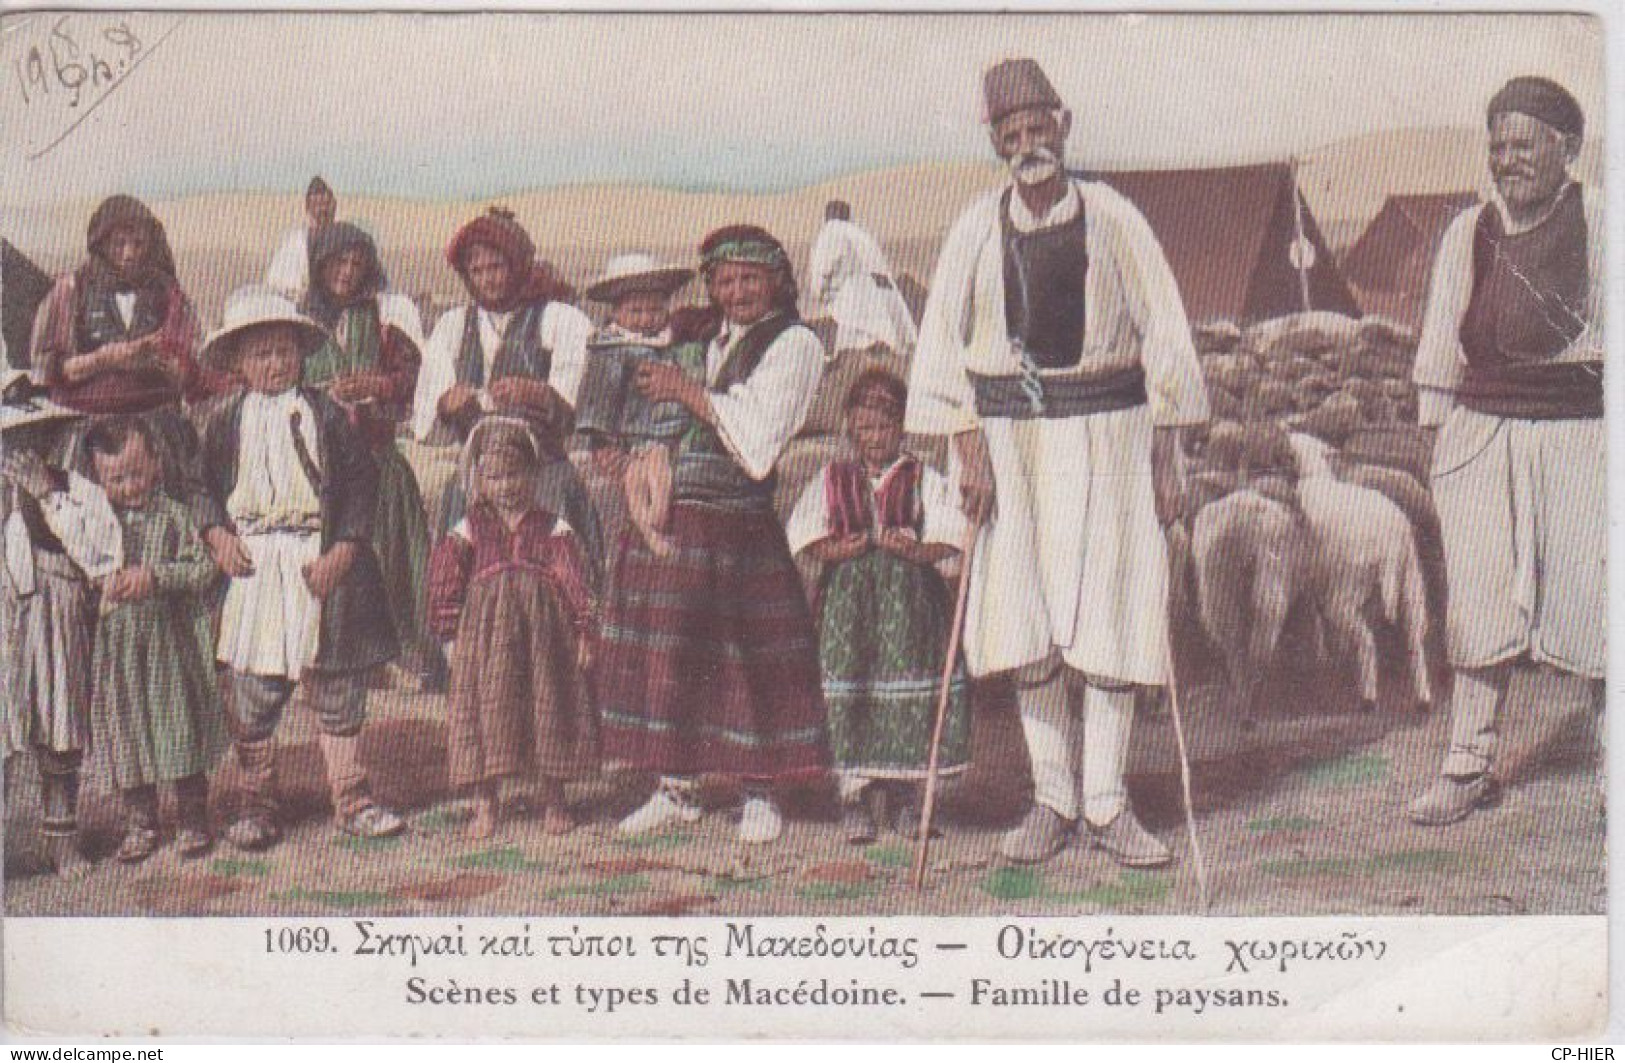 MACEDOINE DU NORD - Macedonia -  SCENES ET TYPES DE MACEDOINE - FAMILLE DE PAYSANS - Nordmazedonien